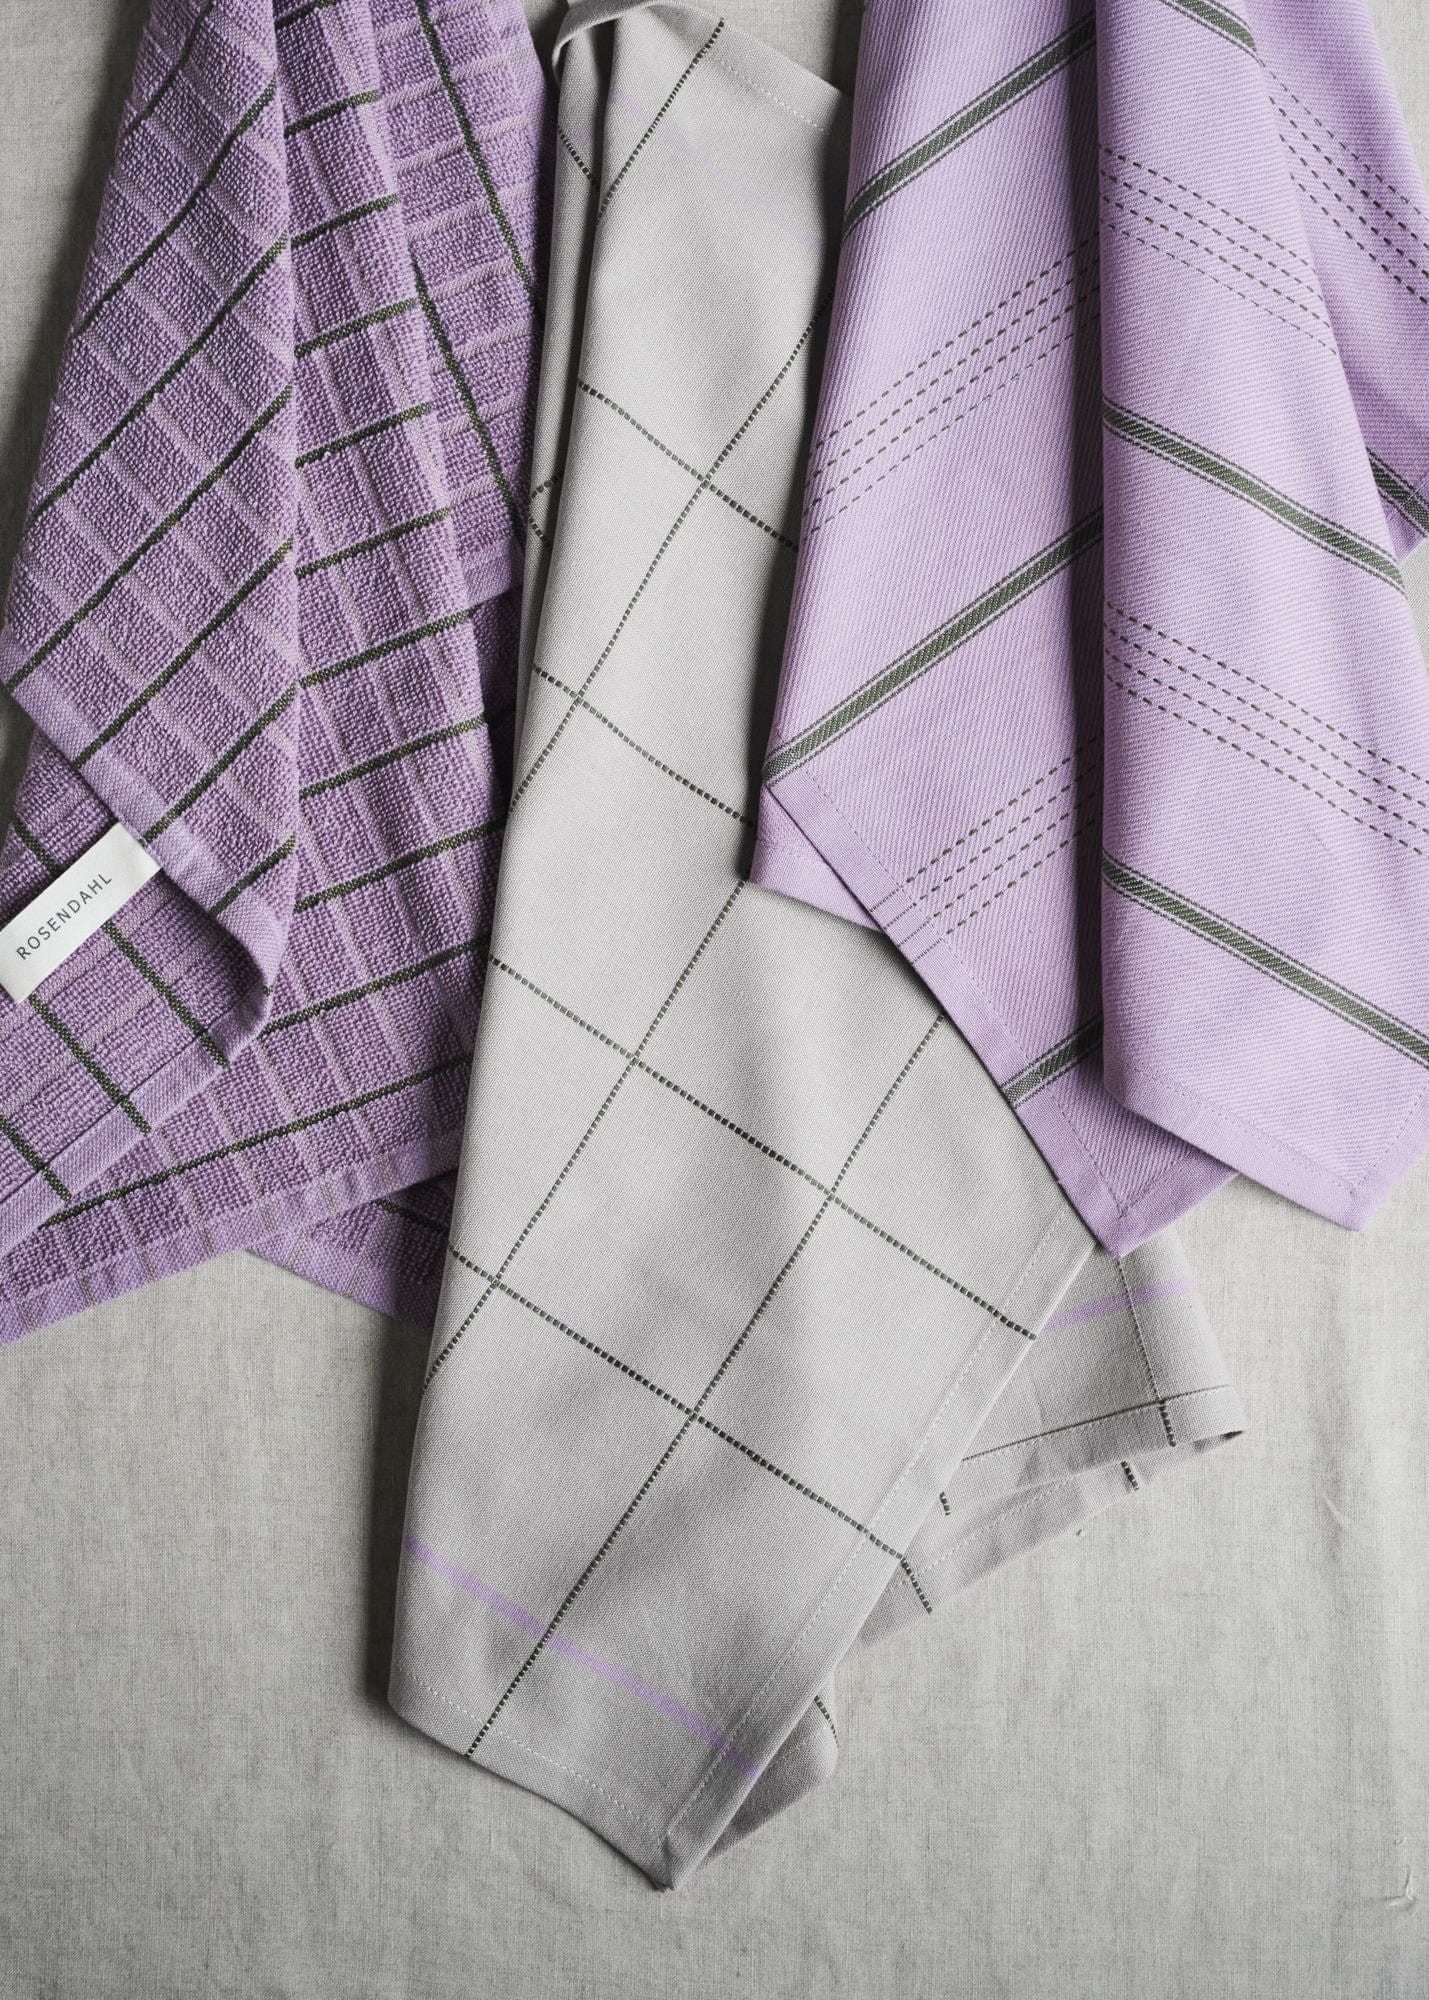 Rosendahl Rosendahl Textiles Terry čajový ručník 50x70 cm, fialová